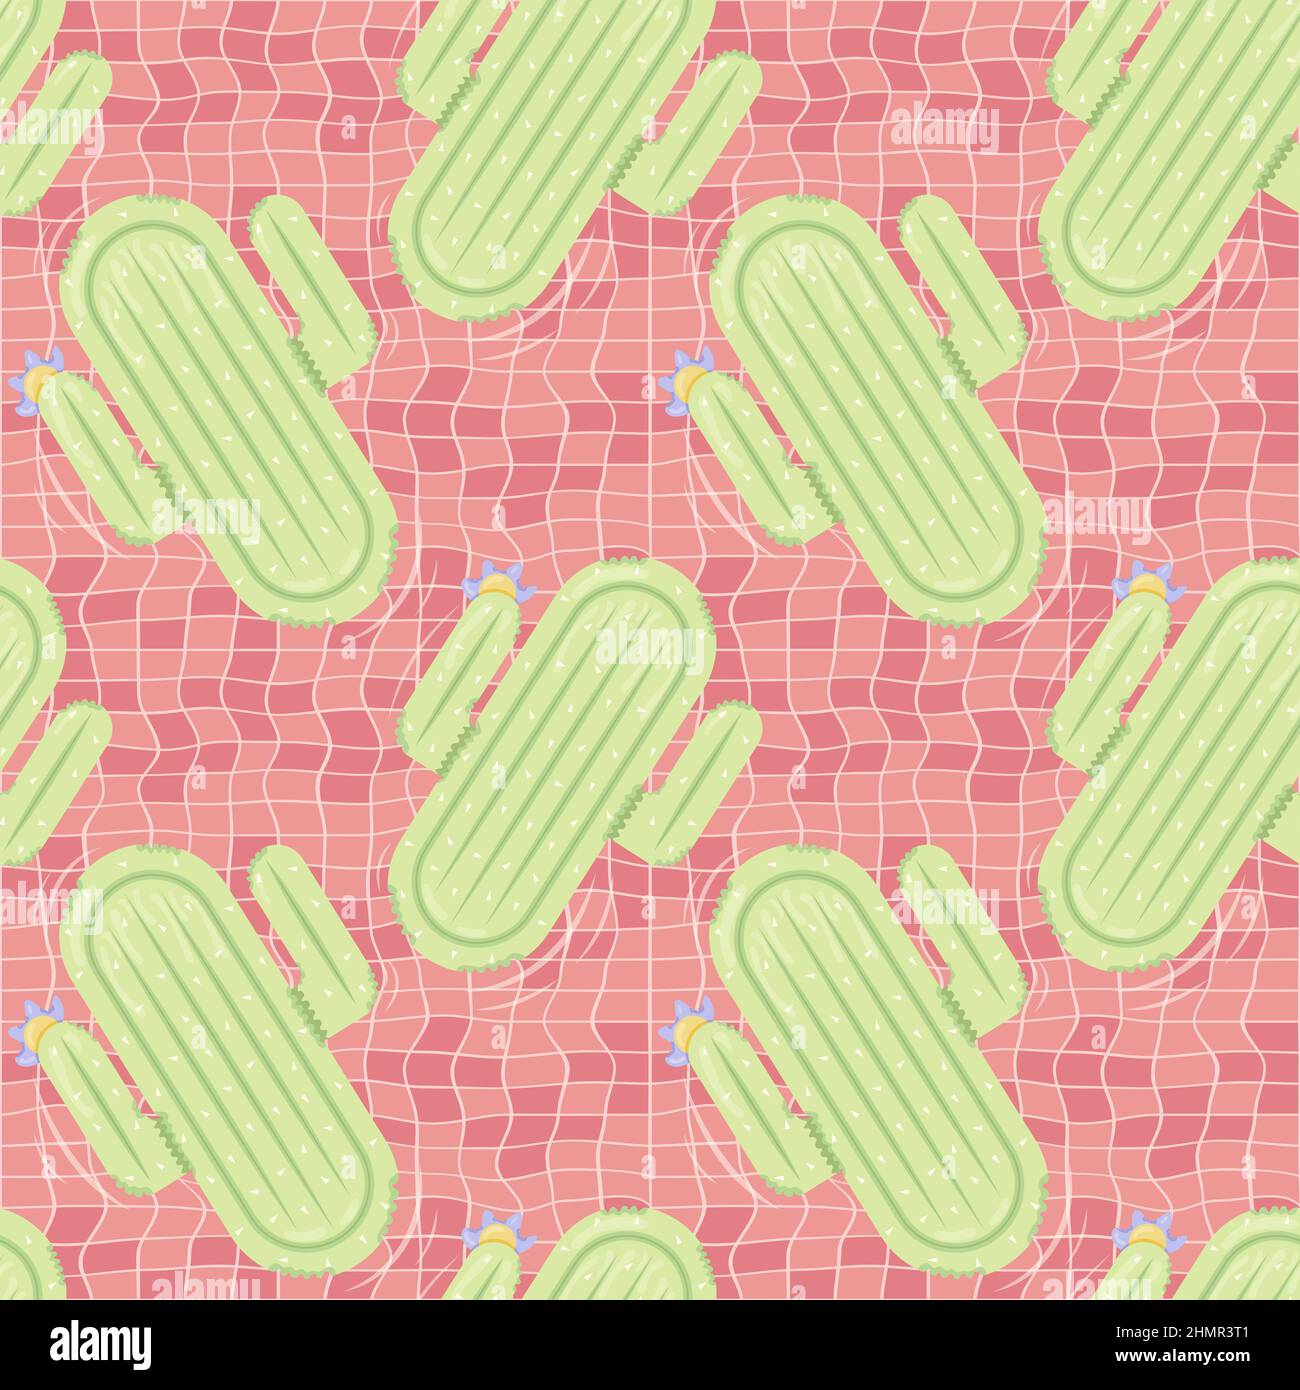 Nahtloses Muster mit kaktusförmigen aufblasbaren Matratzen für Poolparty, Stoffhintergrund und Banner Stock Vektor